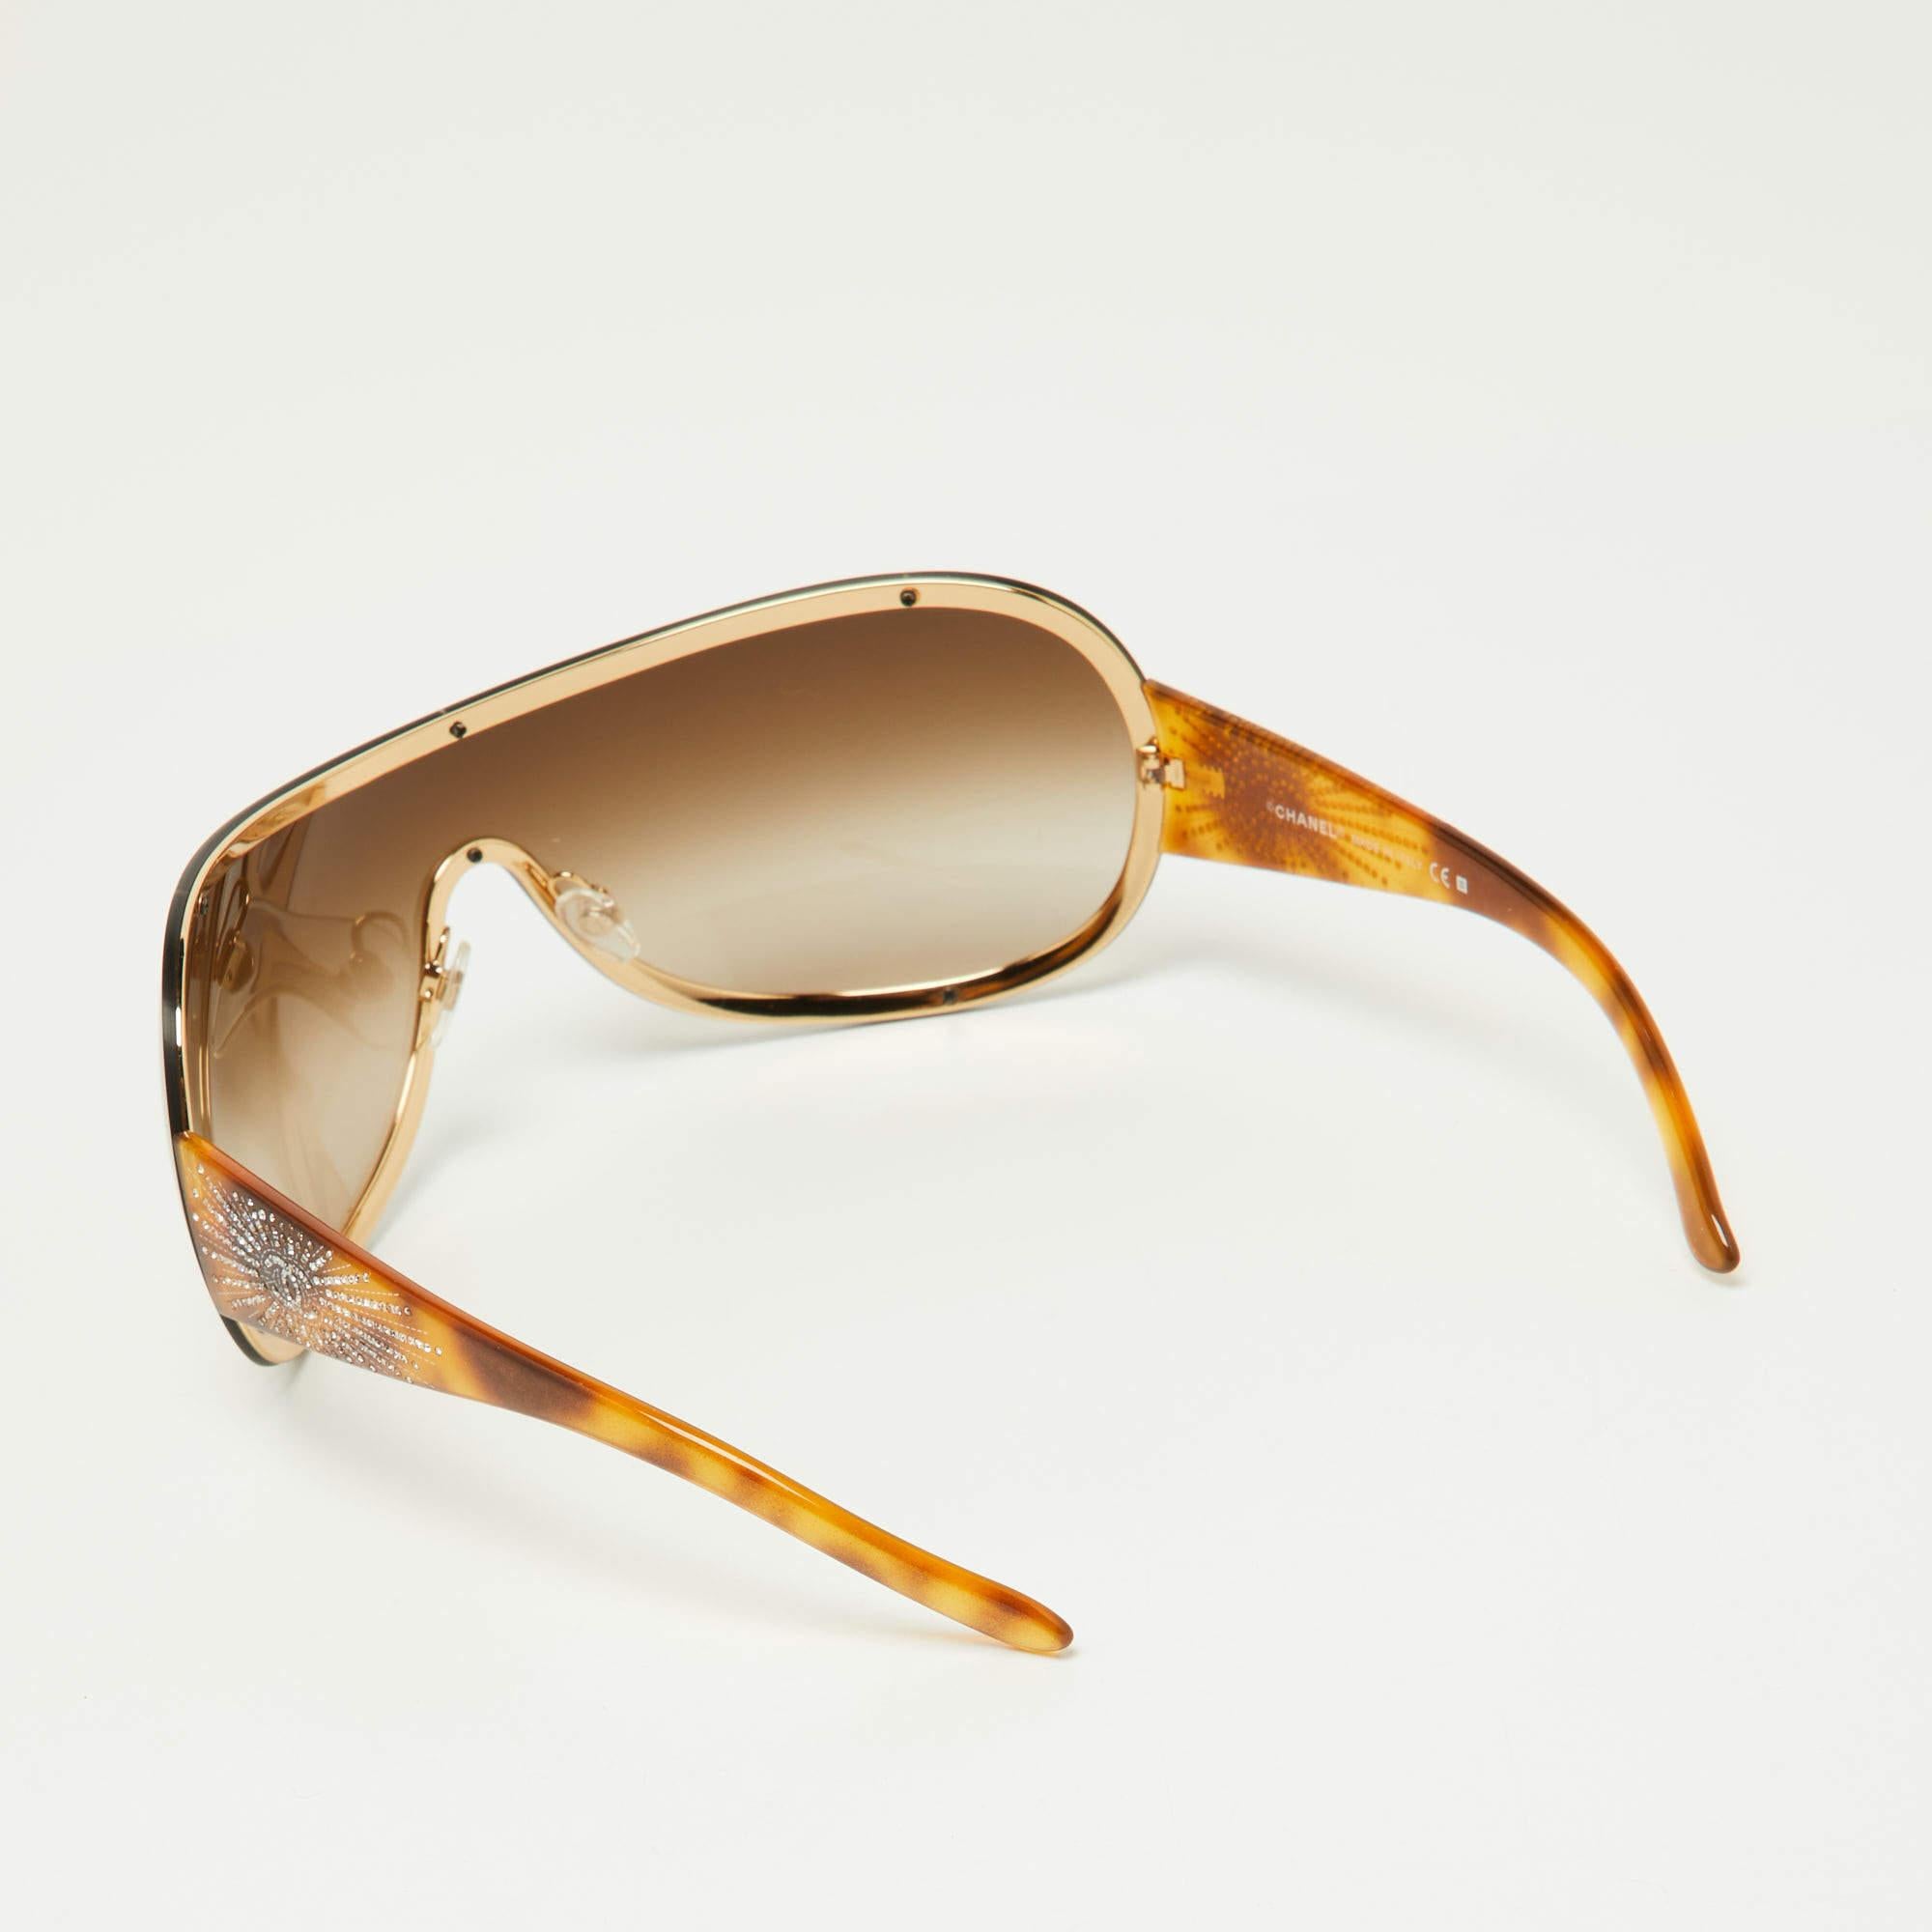 Eine auffällige Sonnenbrille von Chanel ist mit Sicherheit ein wertvoller Kauf. Mit ihrem trendigen Rahmen und den augenschonenden Gläsern ist die Sonnenbrille ideal für den ganzen Tag.

